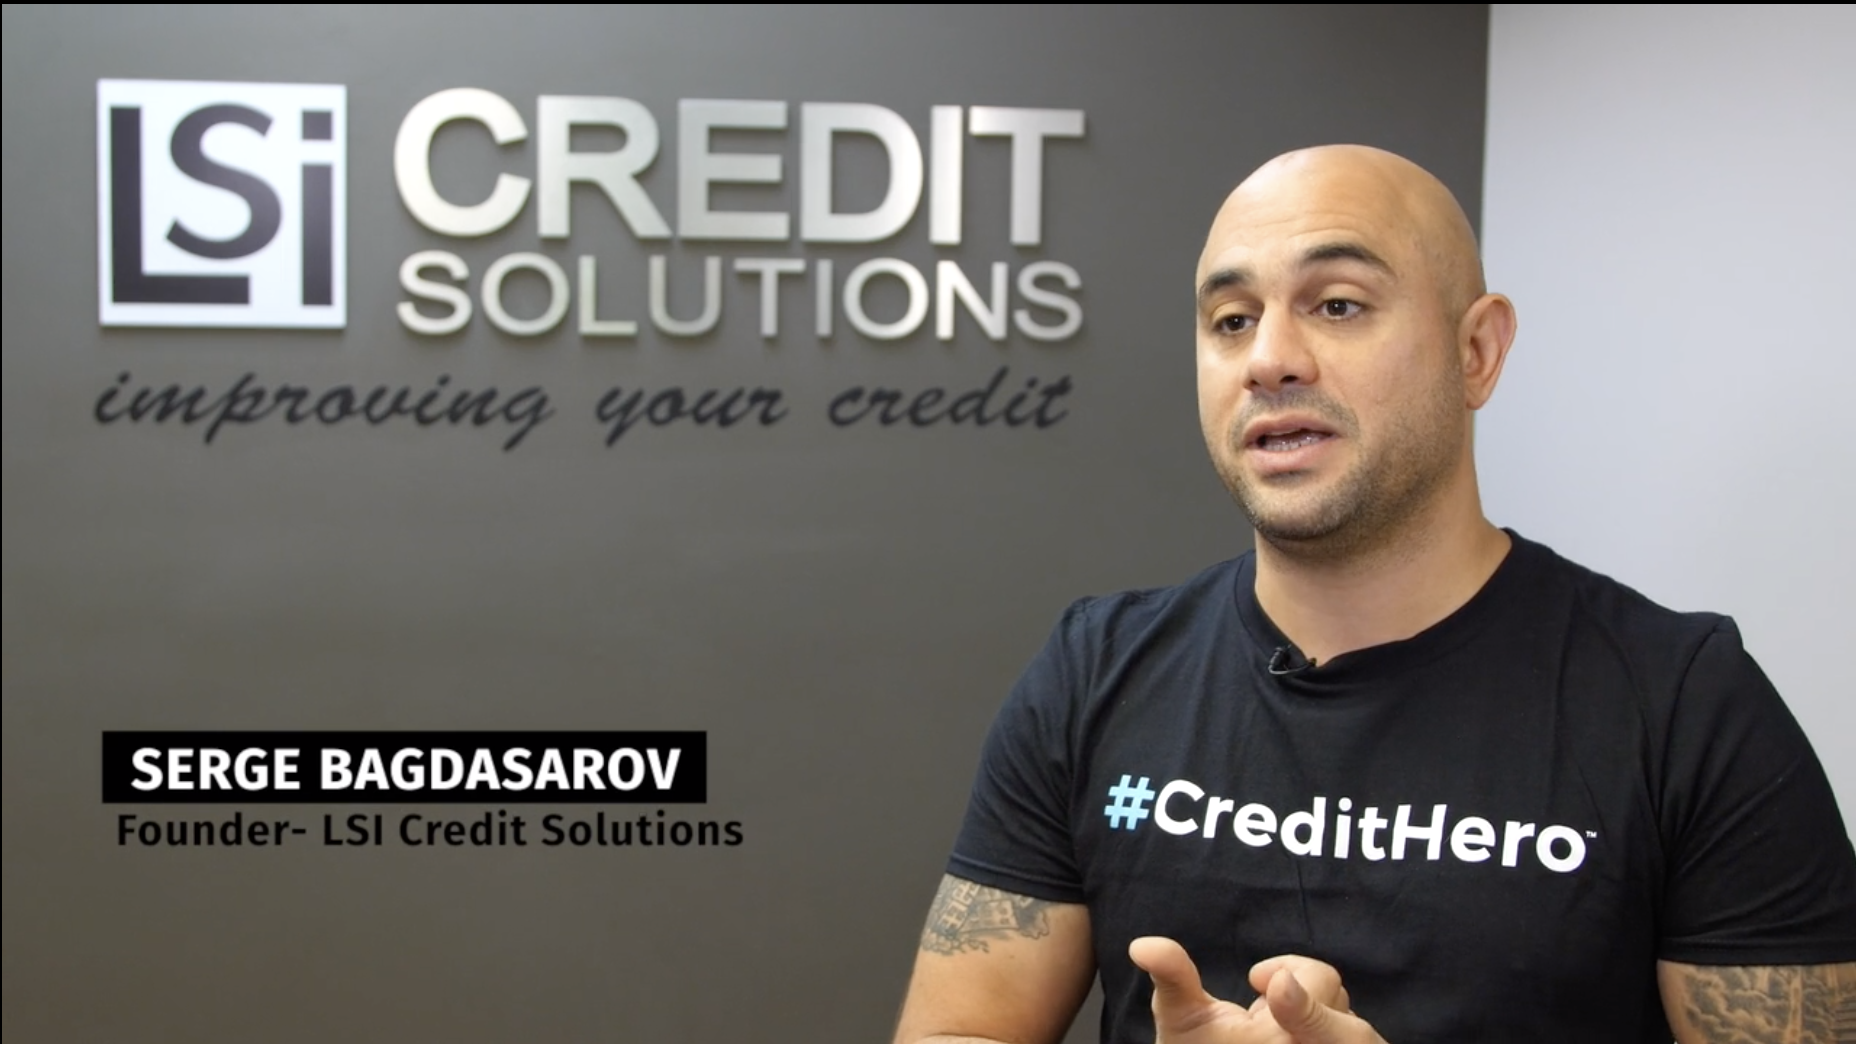 Credit repair business owner Serge Bagdasarov